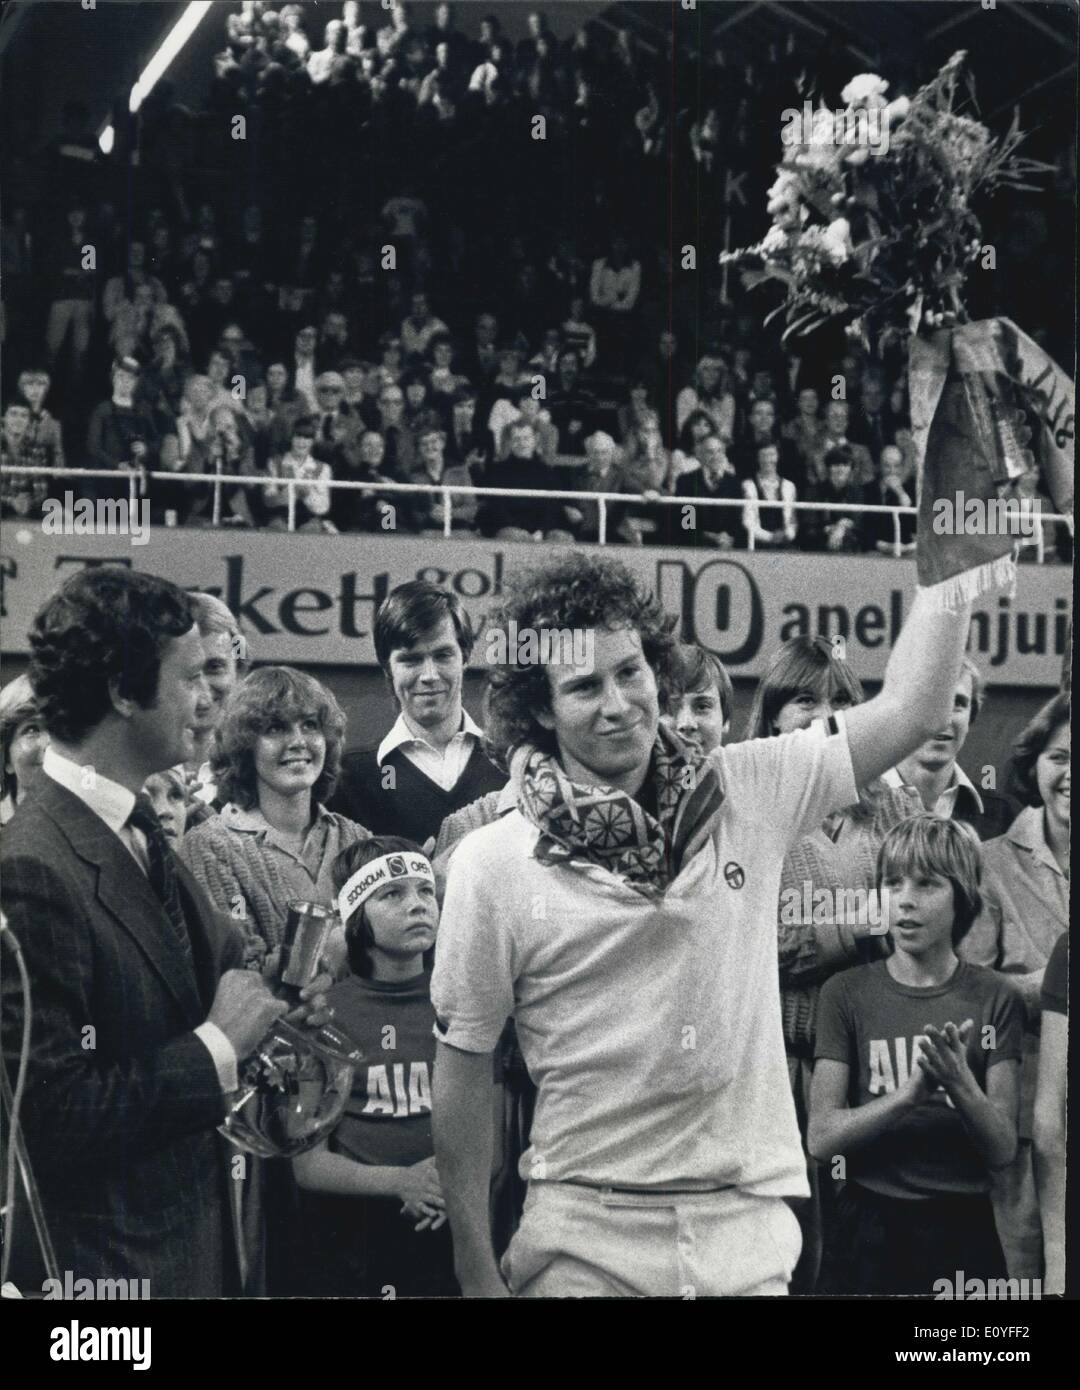 Il 1 gennaio, 1970 - John McEnroe vince il Campionato svedese. Foto Stock